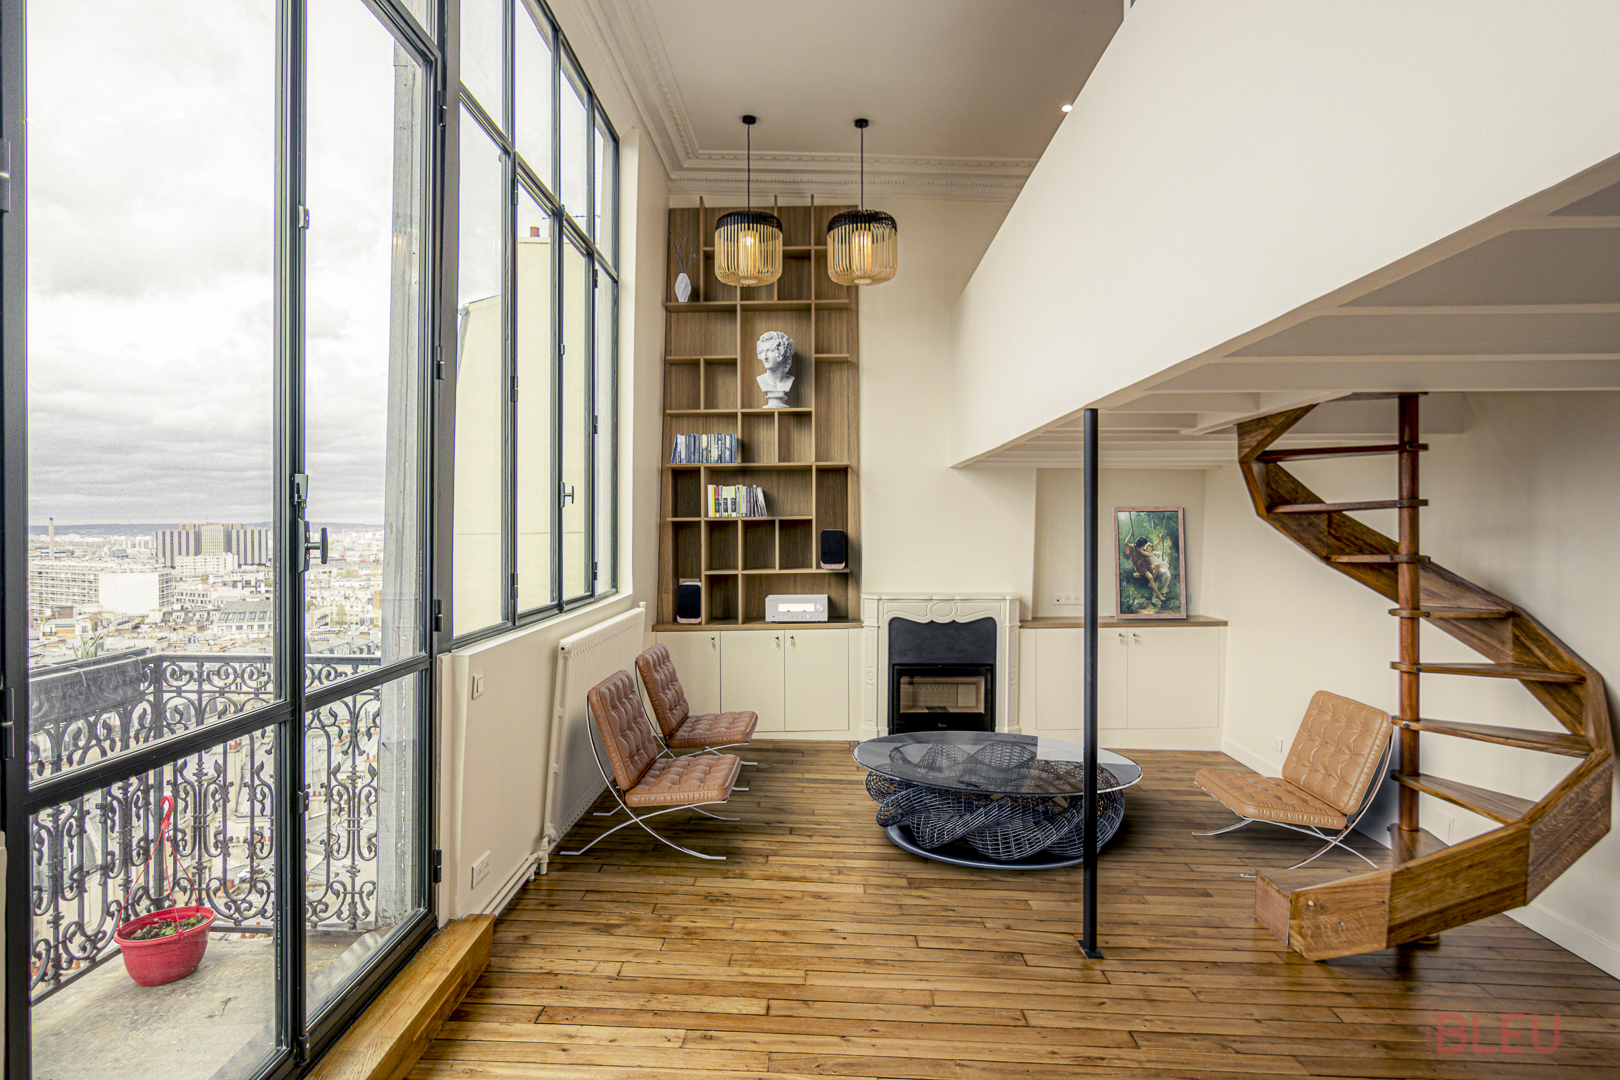 Salon lumineux avec parquet en bois clair, grandes fenêtres à cadre noir, cheminée blanche et escalier en colimaçon en bois - Projet de rénovation loft à Paris par notre agence d'architecture intérieur